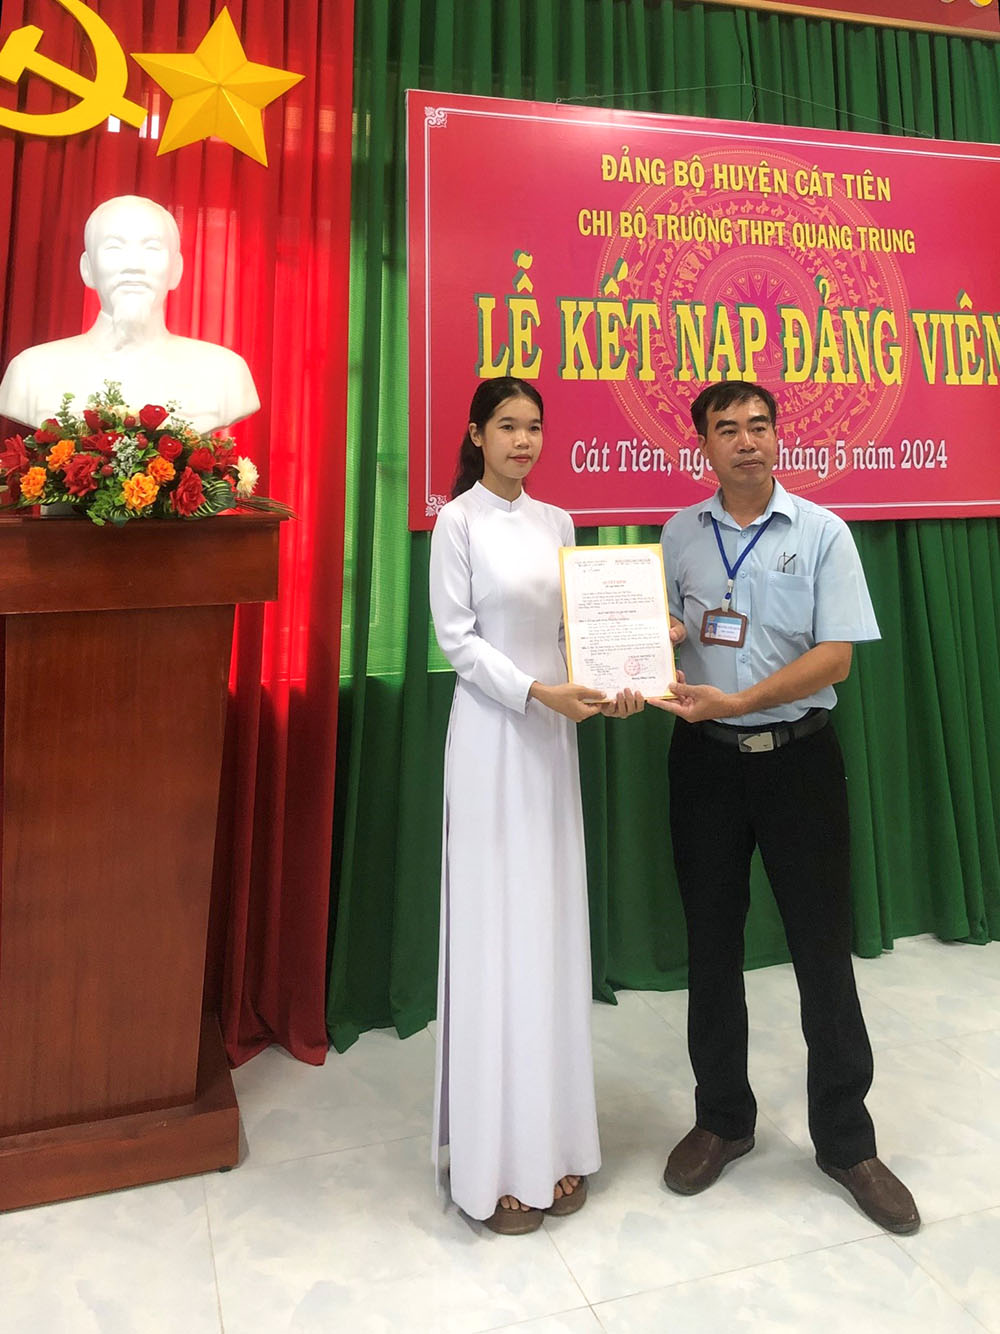 Học sinh đầu tiên của Trường THPT Quang Trung được kết nạp Đảng